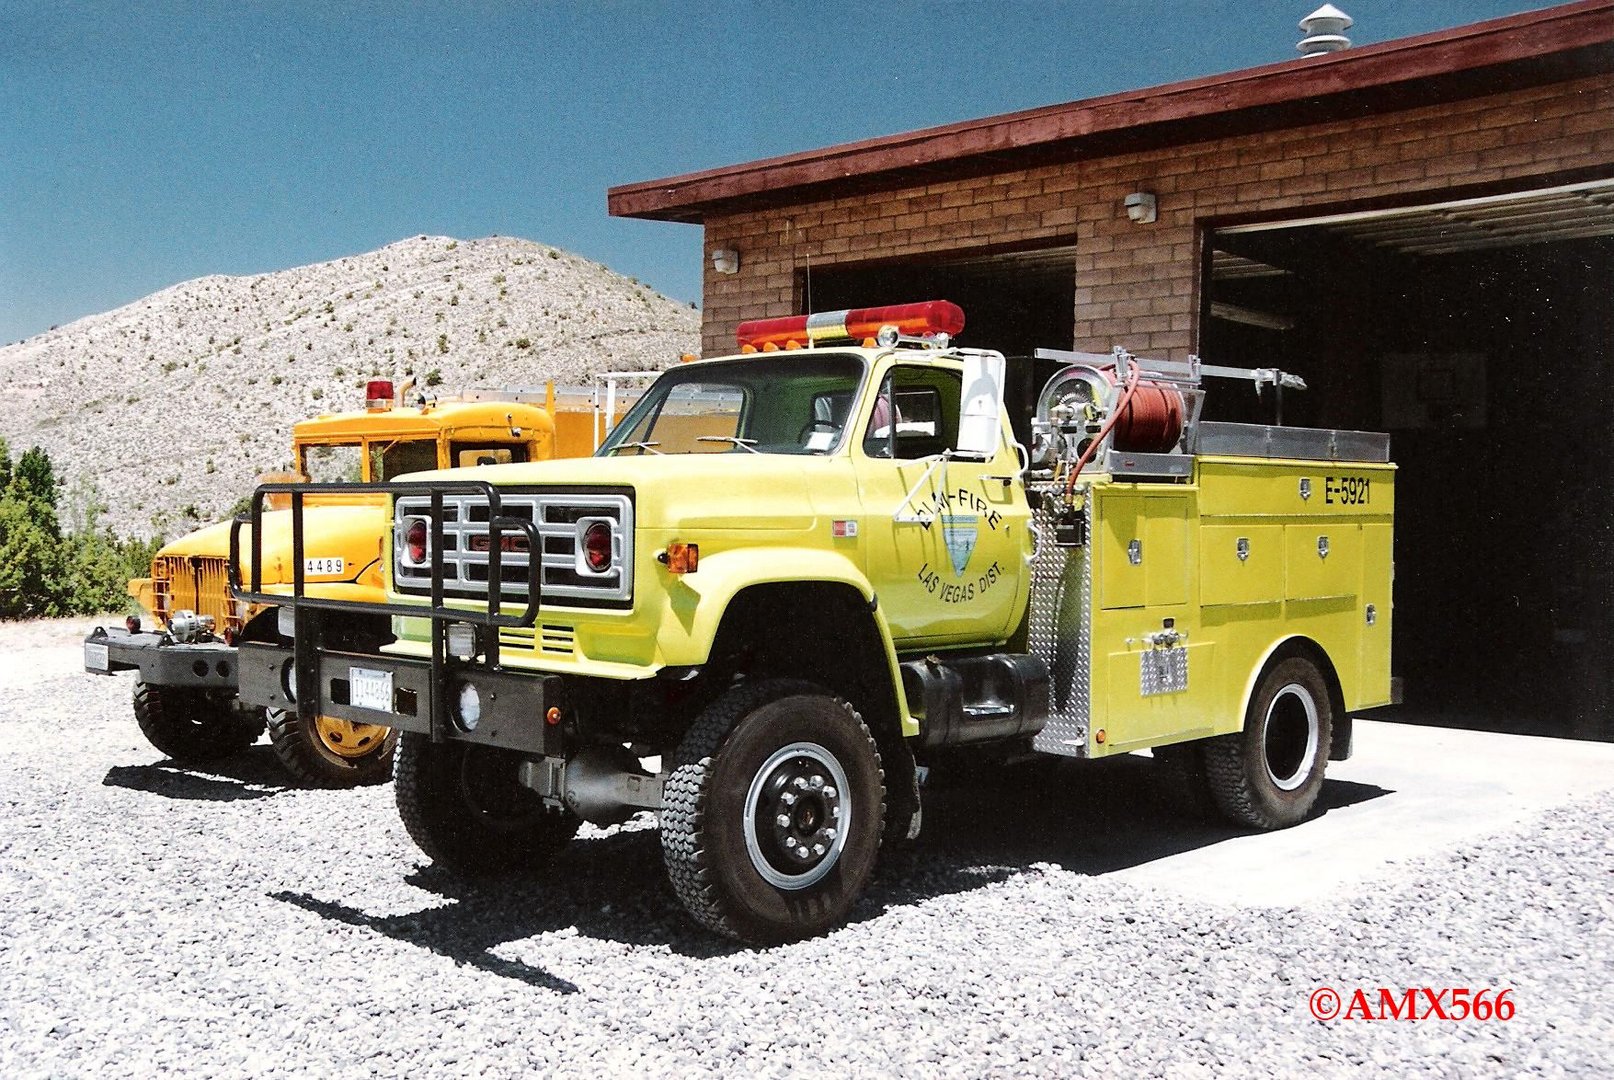 GMC Fire Truck